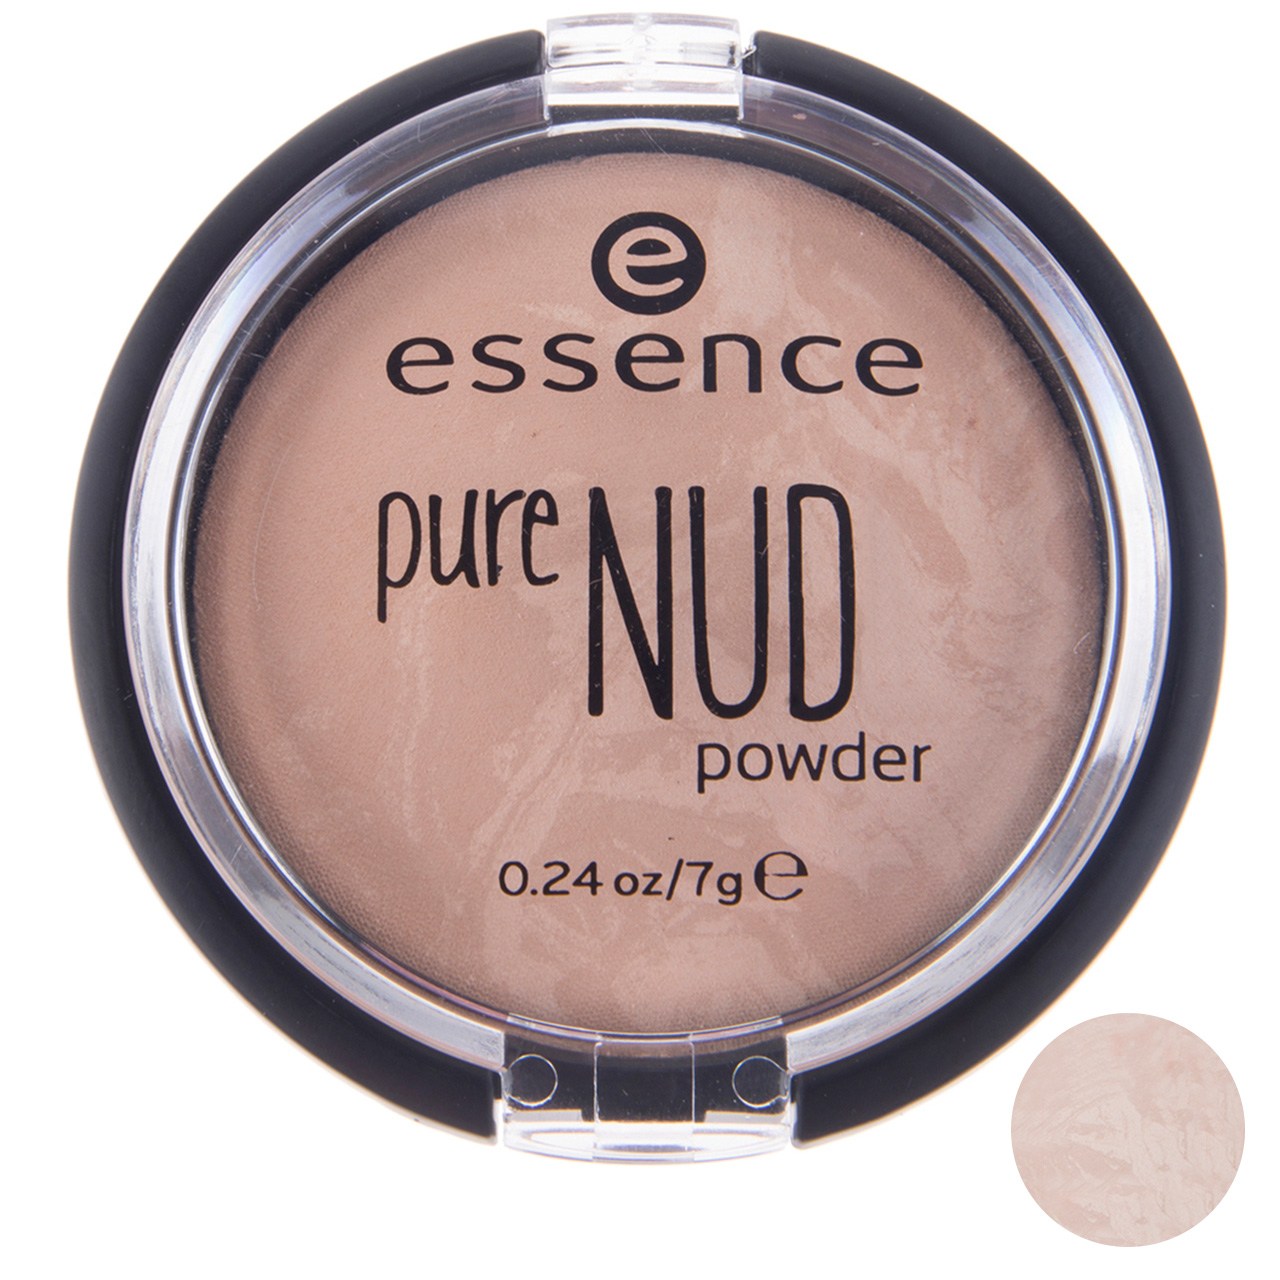 پنکیک اسنس مدل Pure Nud شماره 20